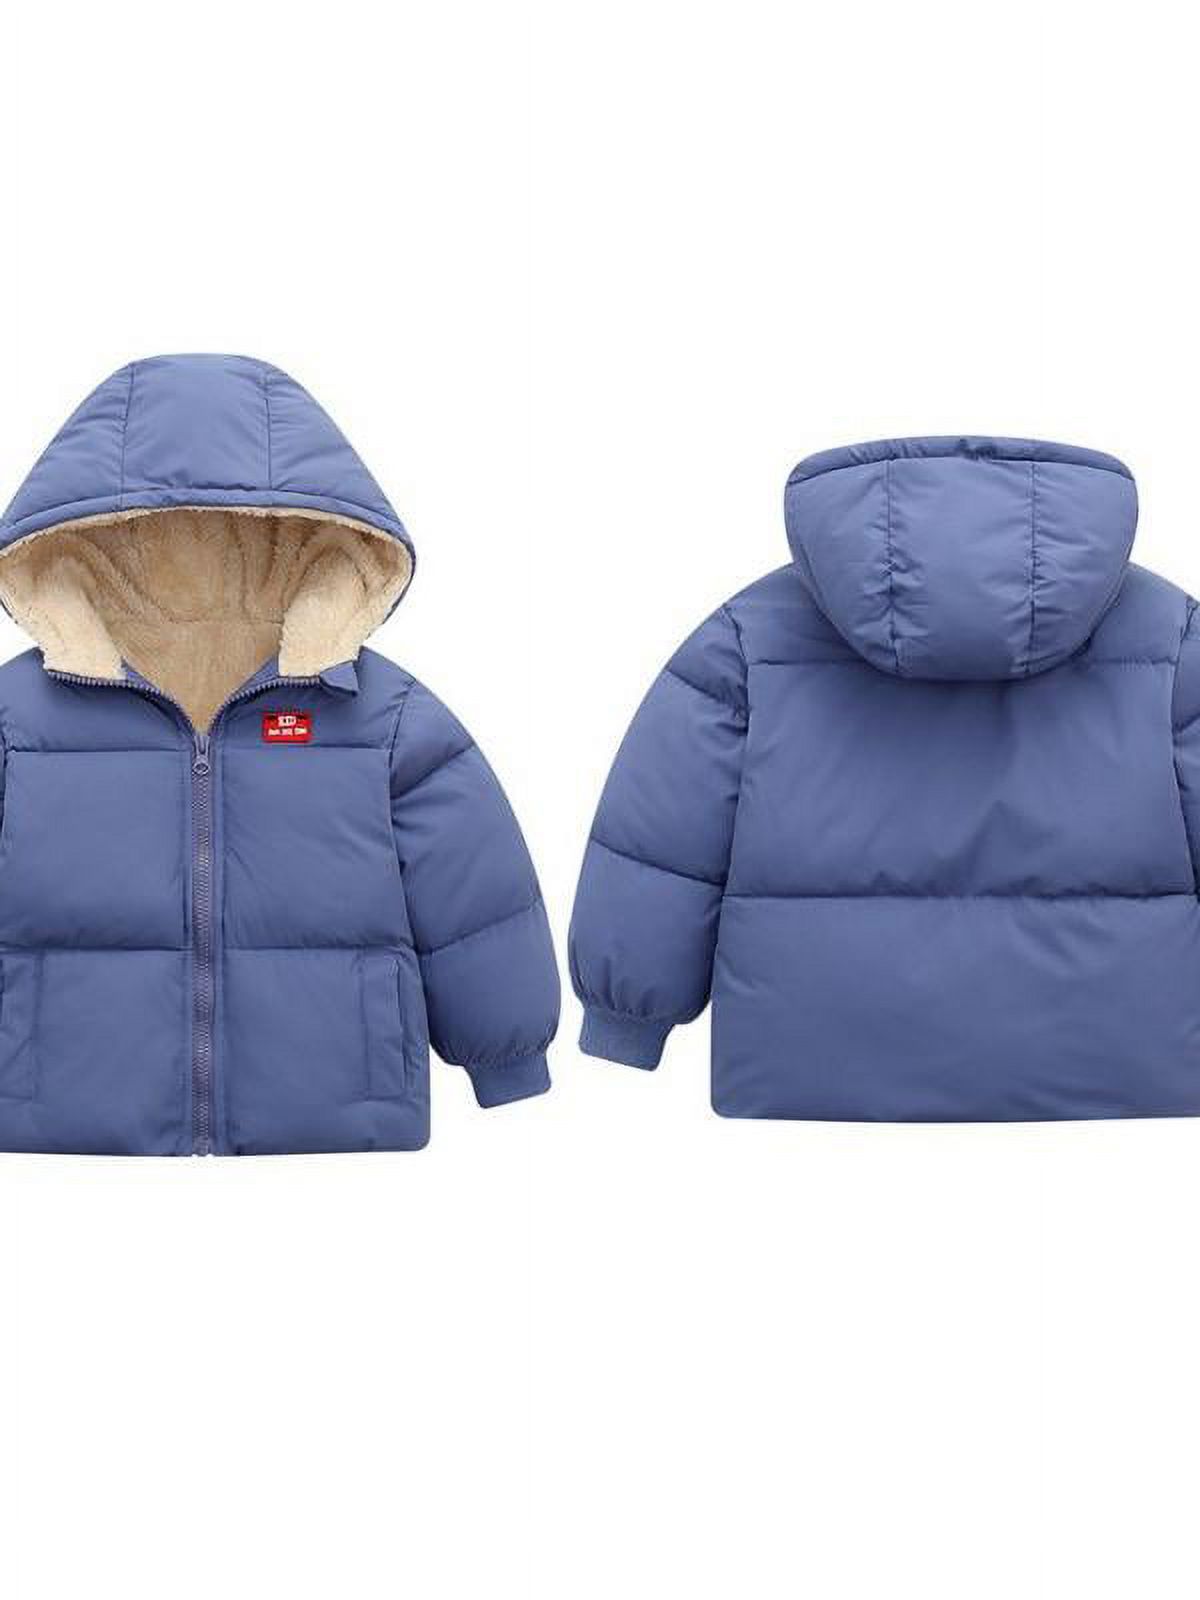 Topumt Boys Girls Hooded Down Jacket Winter Warm Fleece Coat Windproof Zipper Puffer Outerwear 1-6T - image 3 of 3